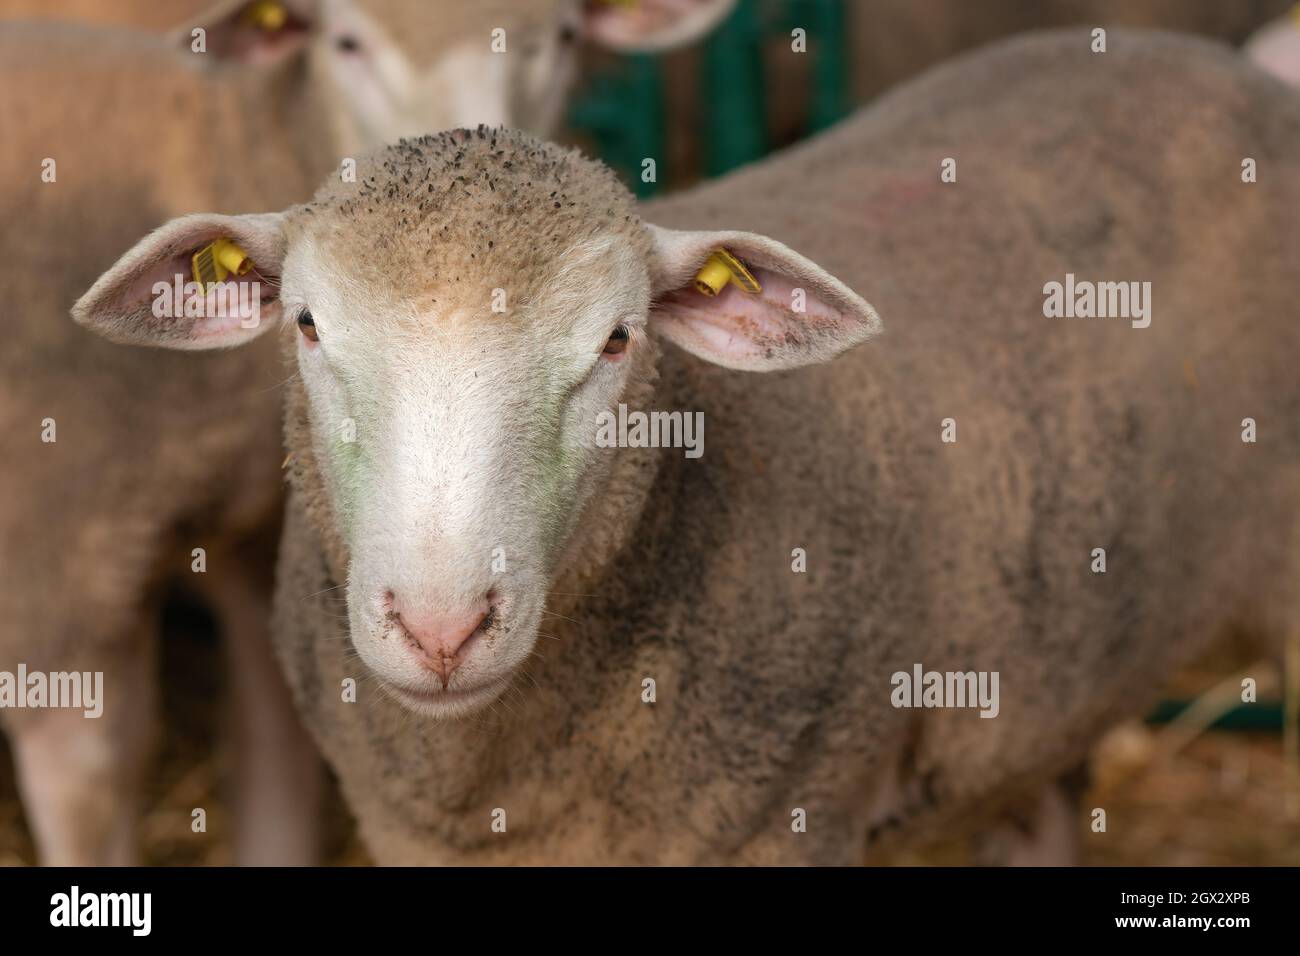 Moutons dans un enclos, animaux d'élevage dans une ferme Banque D'Images